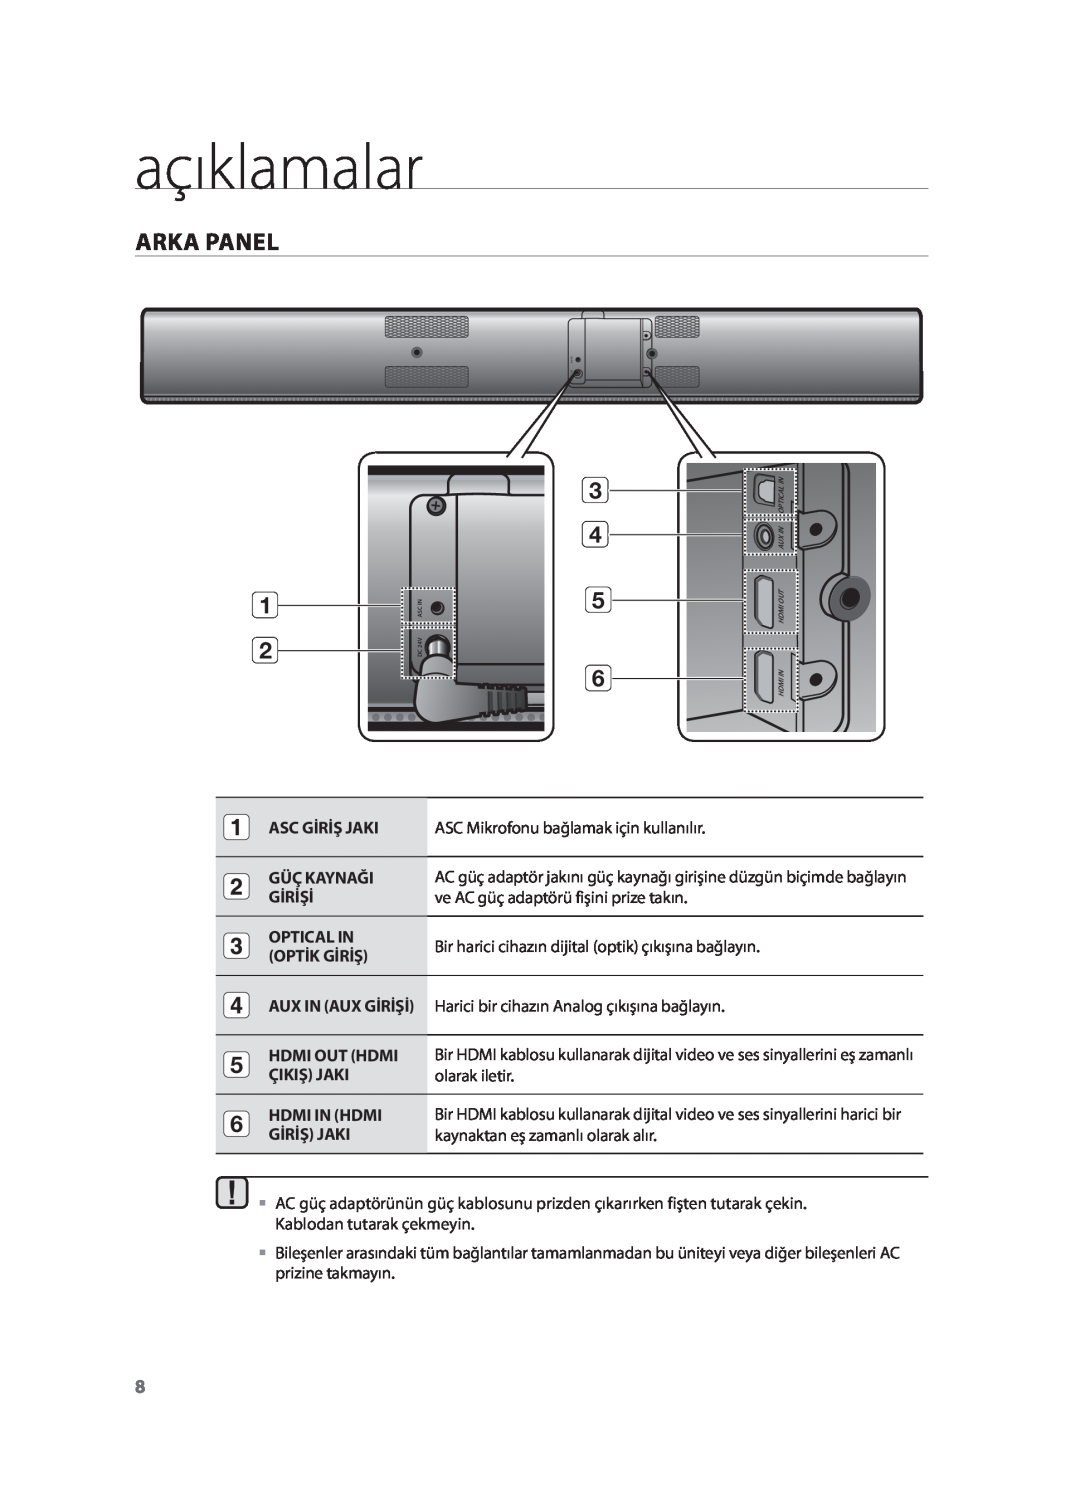 Samsung HW-F751/XN açıklamalar, Arka Panel, Asc Giriş Jaki, ASC Mikrofonu bağlamak için kullanılır, Güç Kaynaği, Girişi 